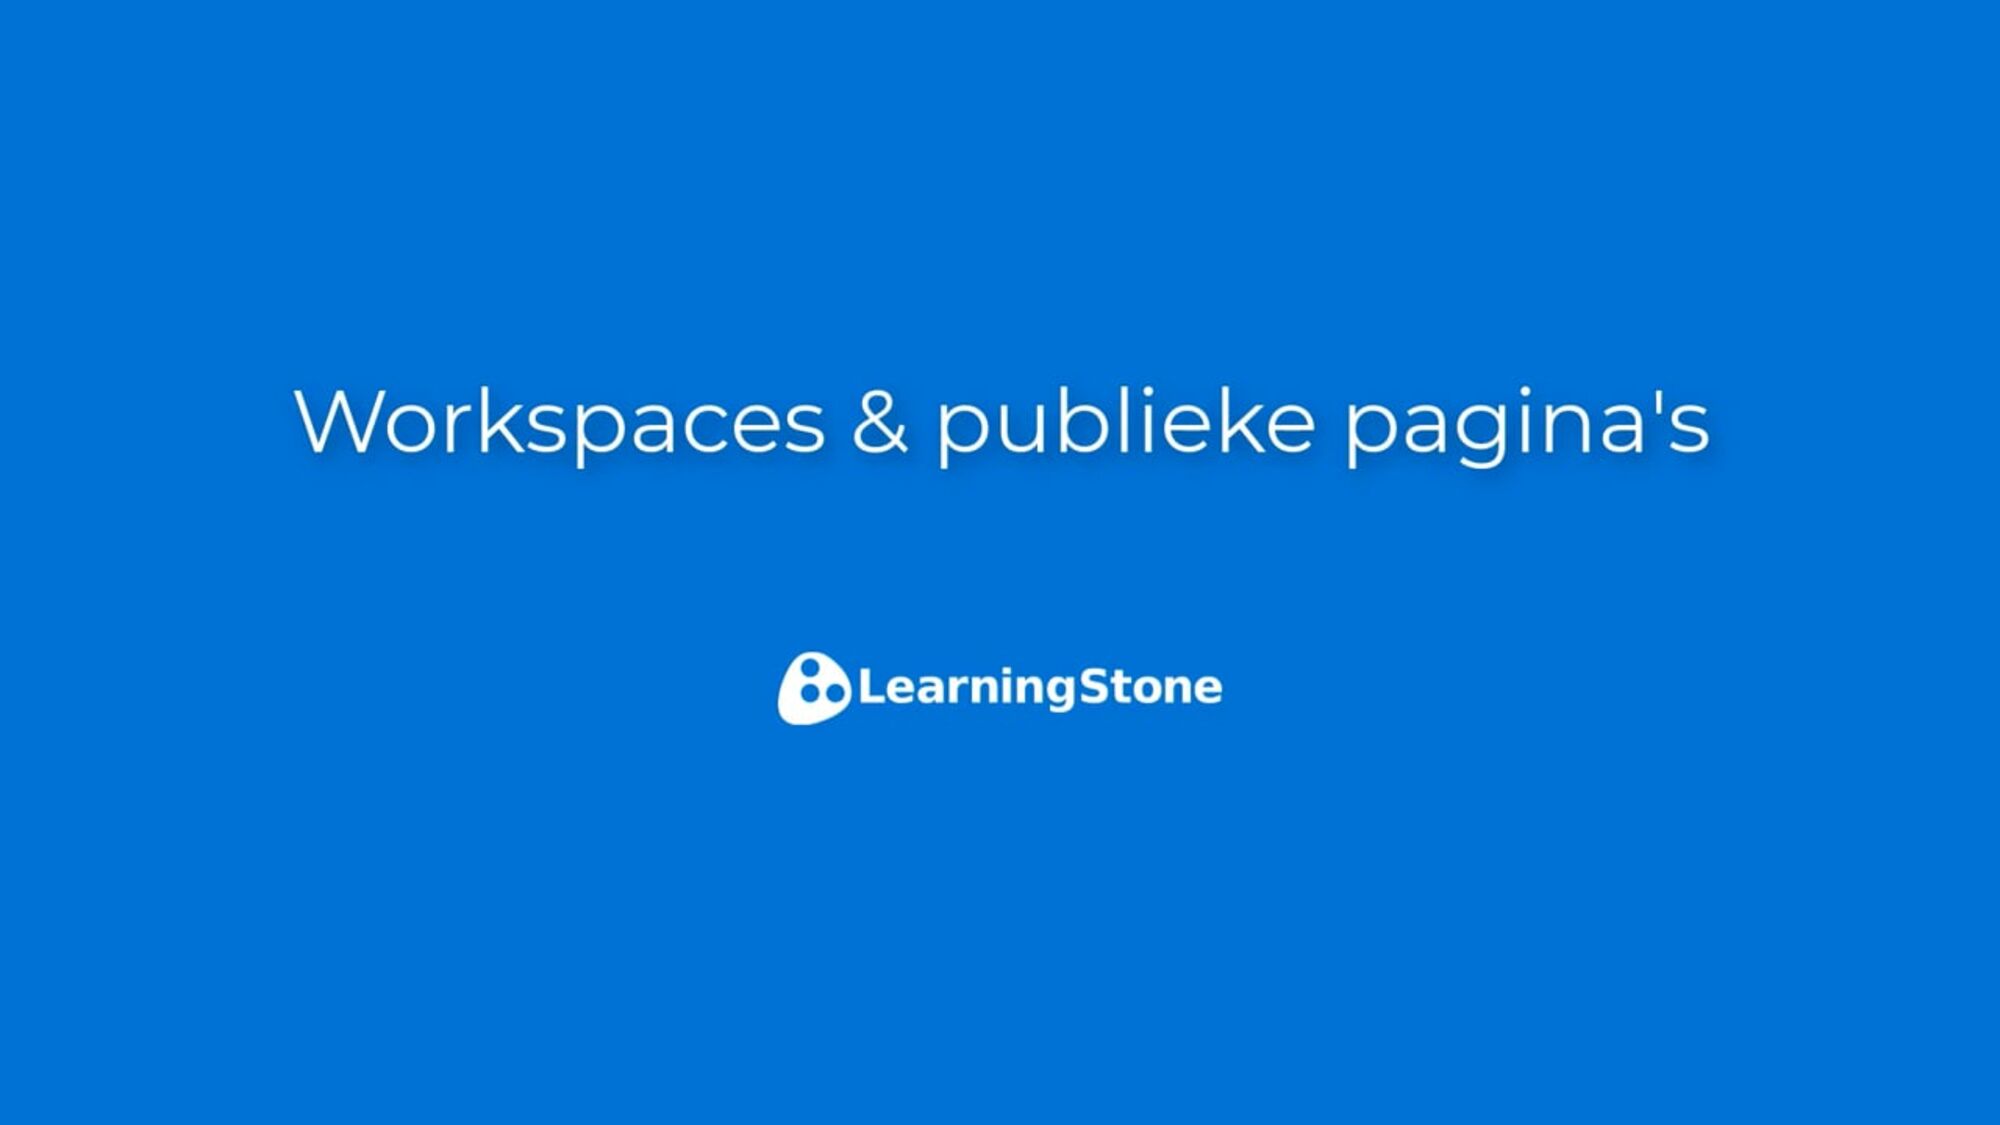 1 Workspaces & publieke pagina's NL